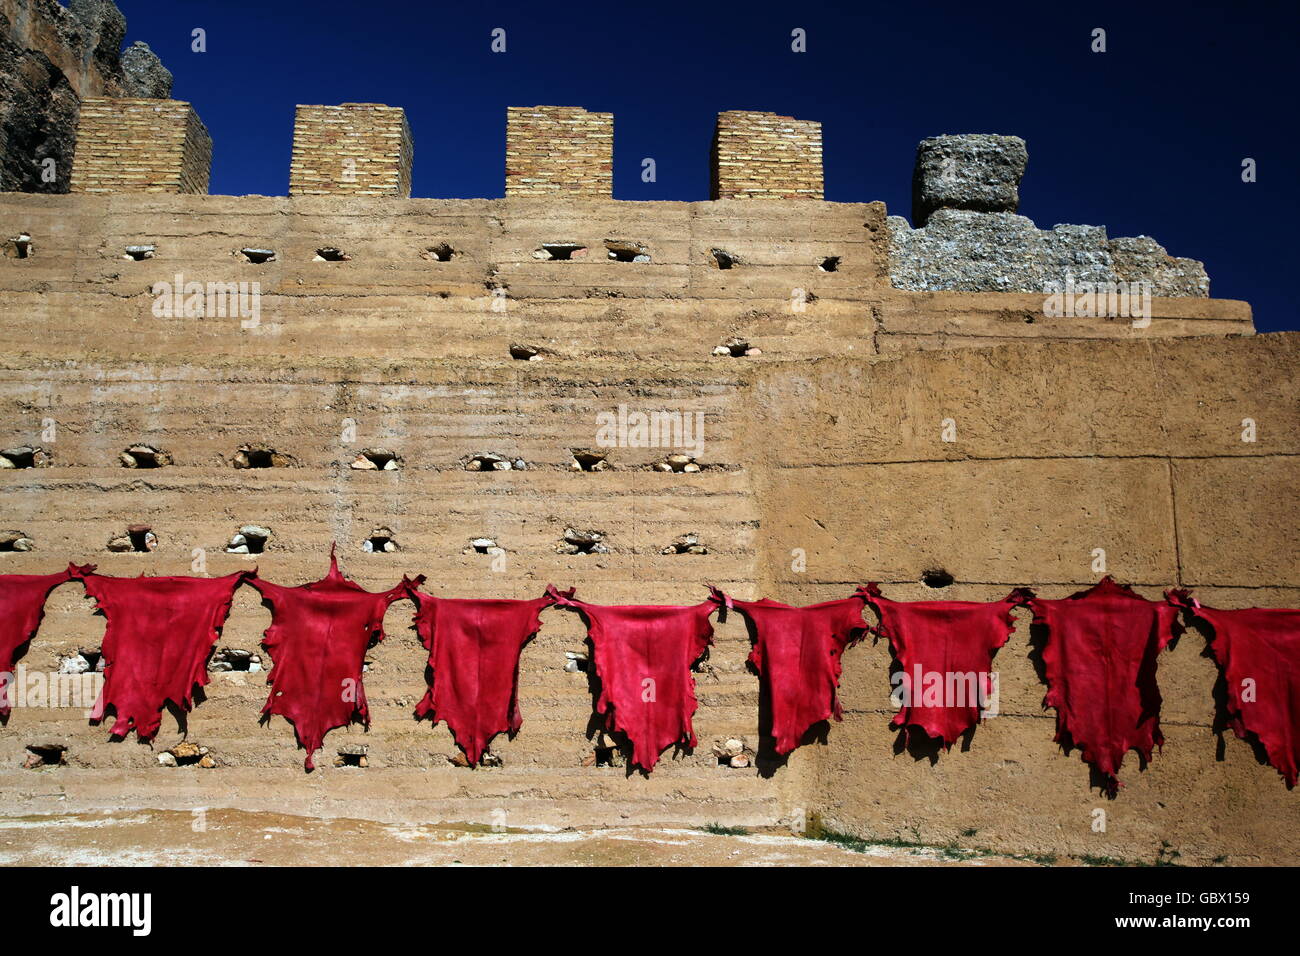 Frisch gefaerbtes Leder der Gerbereien wird ueber der Medina und Altstadt an der Stadtmauer zum trocknen ausgelegt dies in Fes i Stock Photo